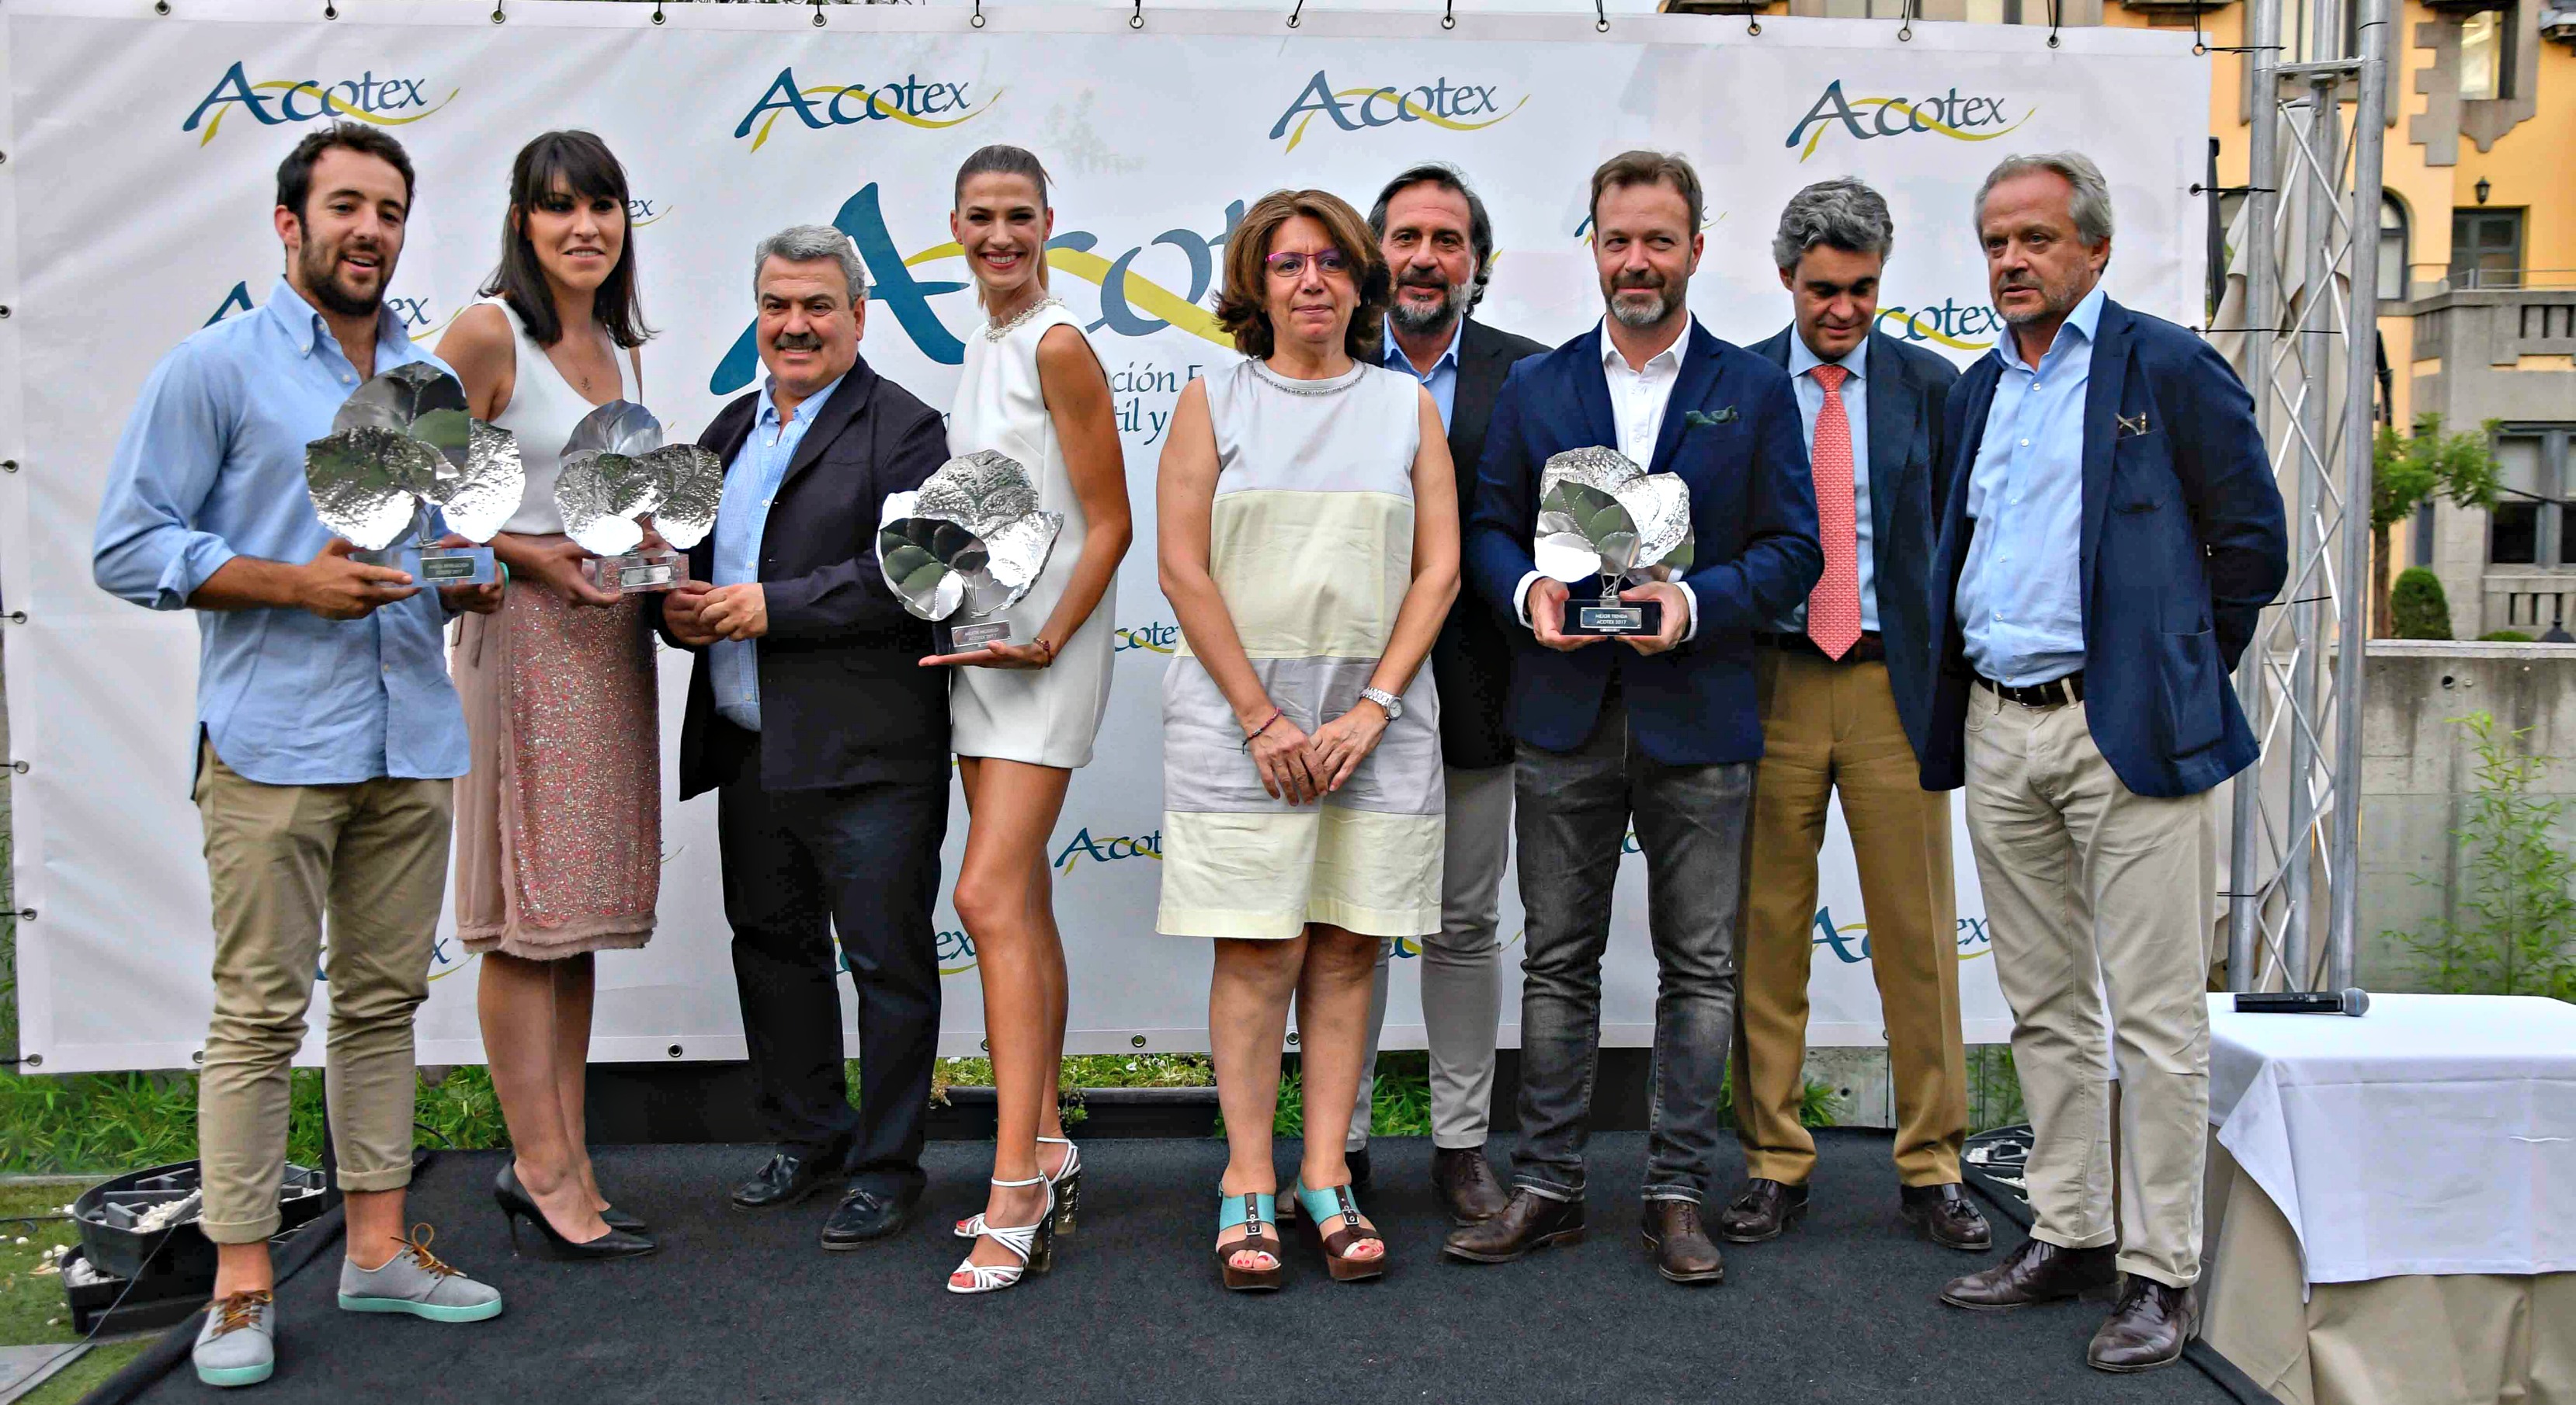 Premios Acotex 2017 reúne a los principales representantes del sector textil español